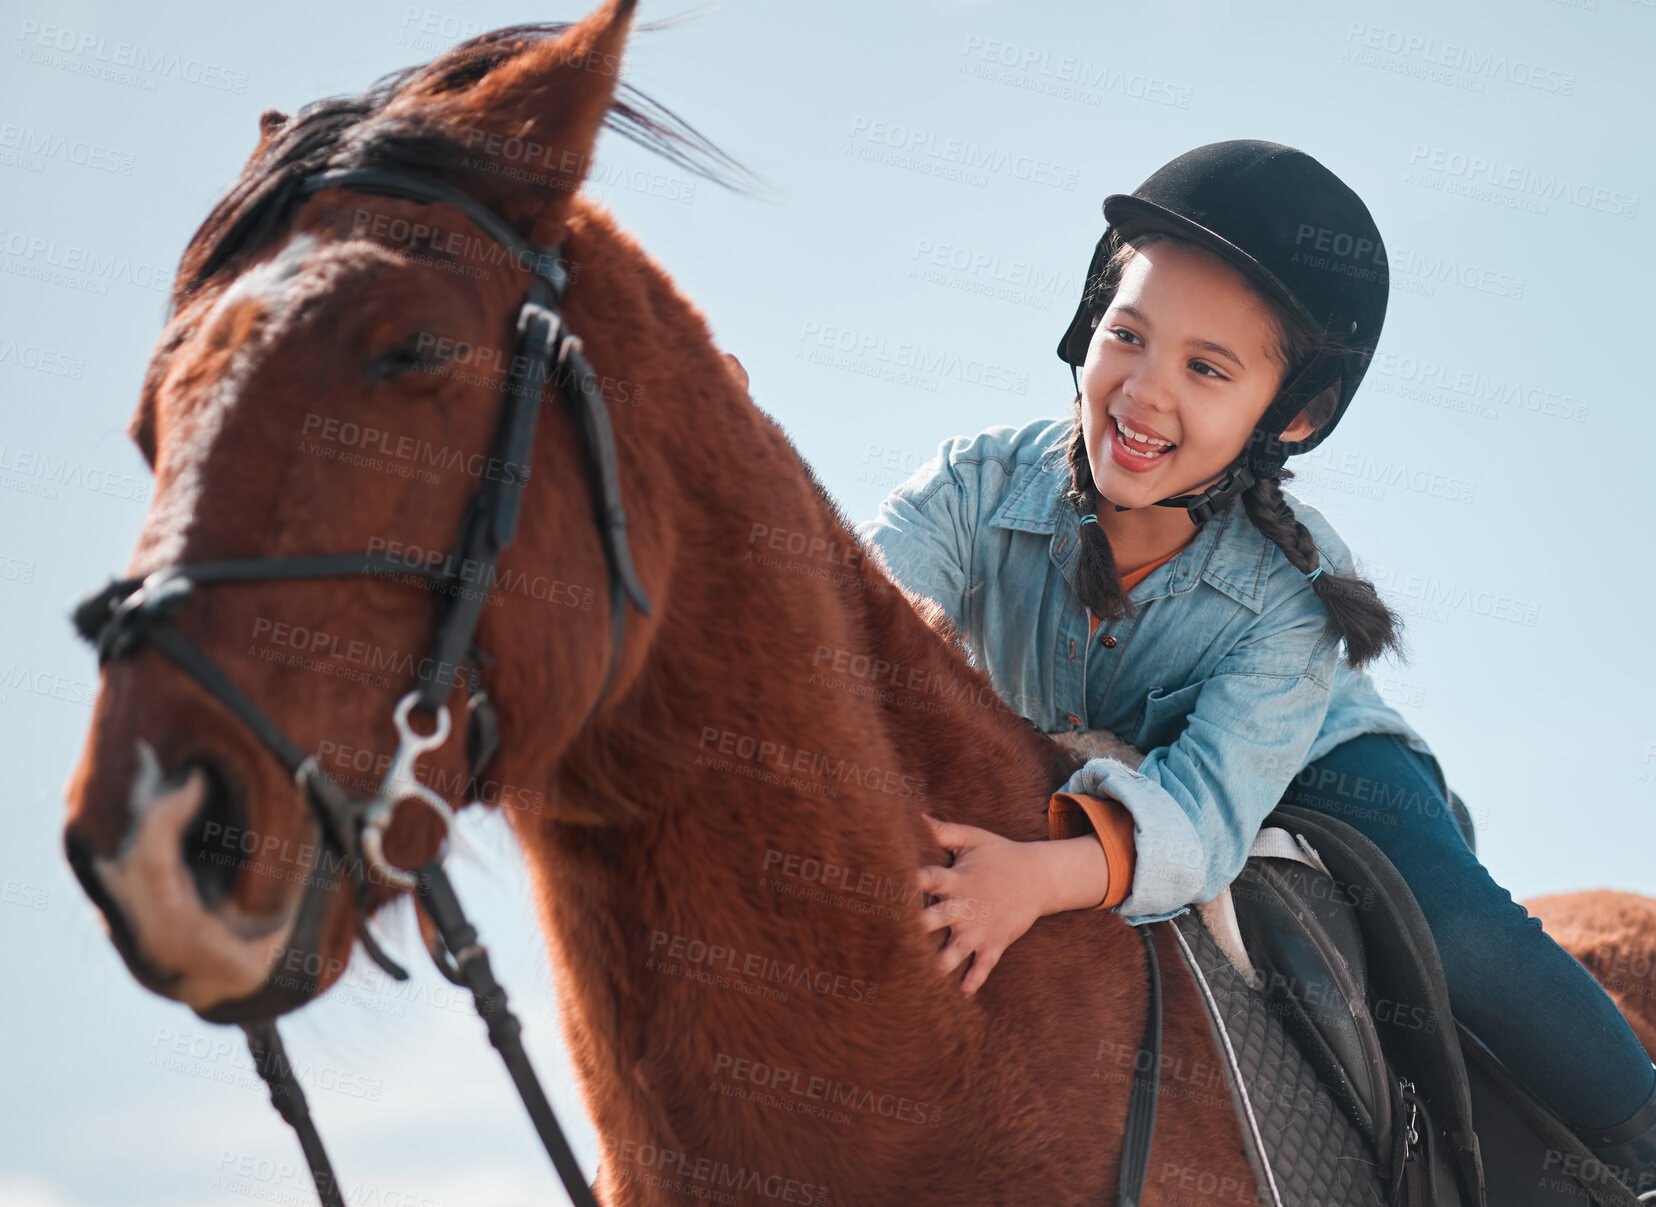 Buy stock photo Shot of an adorable little girl riding a horse